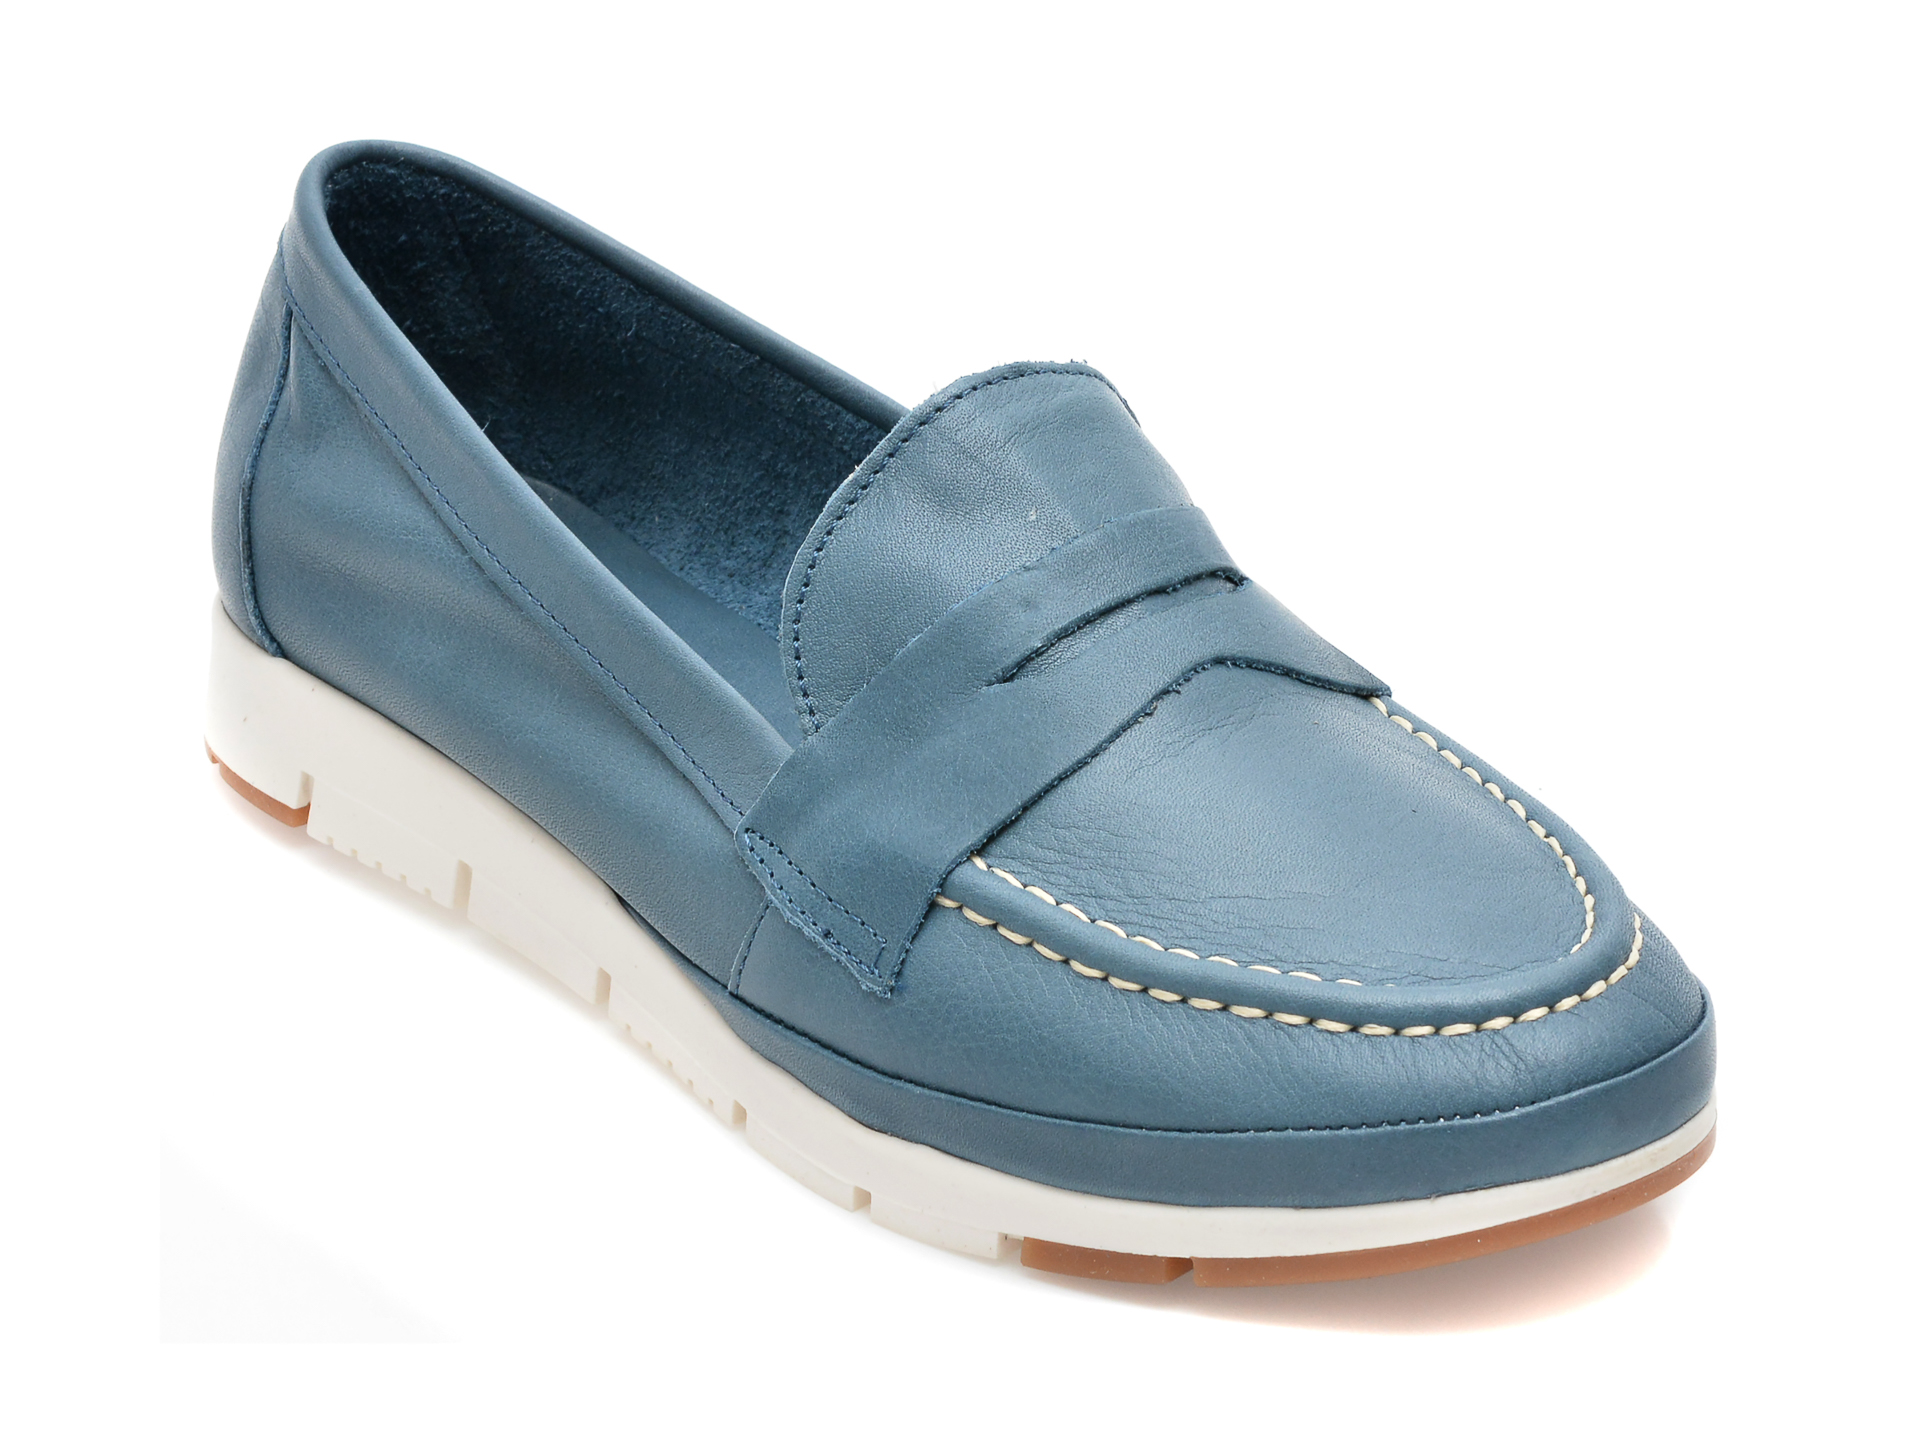 Pantofi THOMAS MUNZ albastri, 11462029, din piele naturala